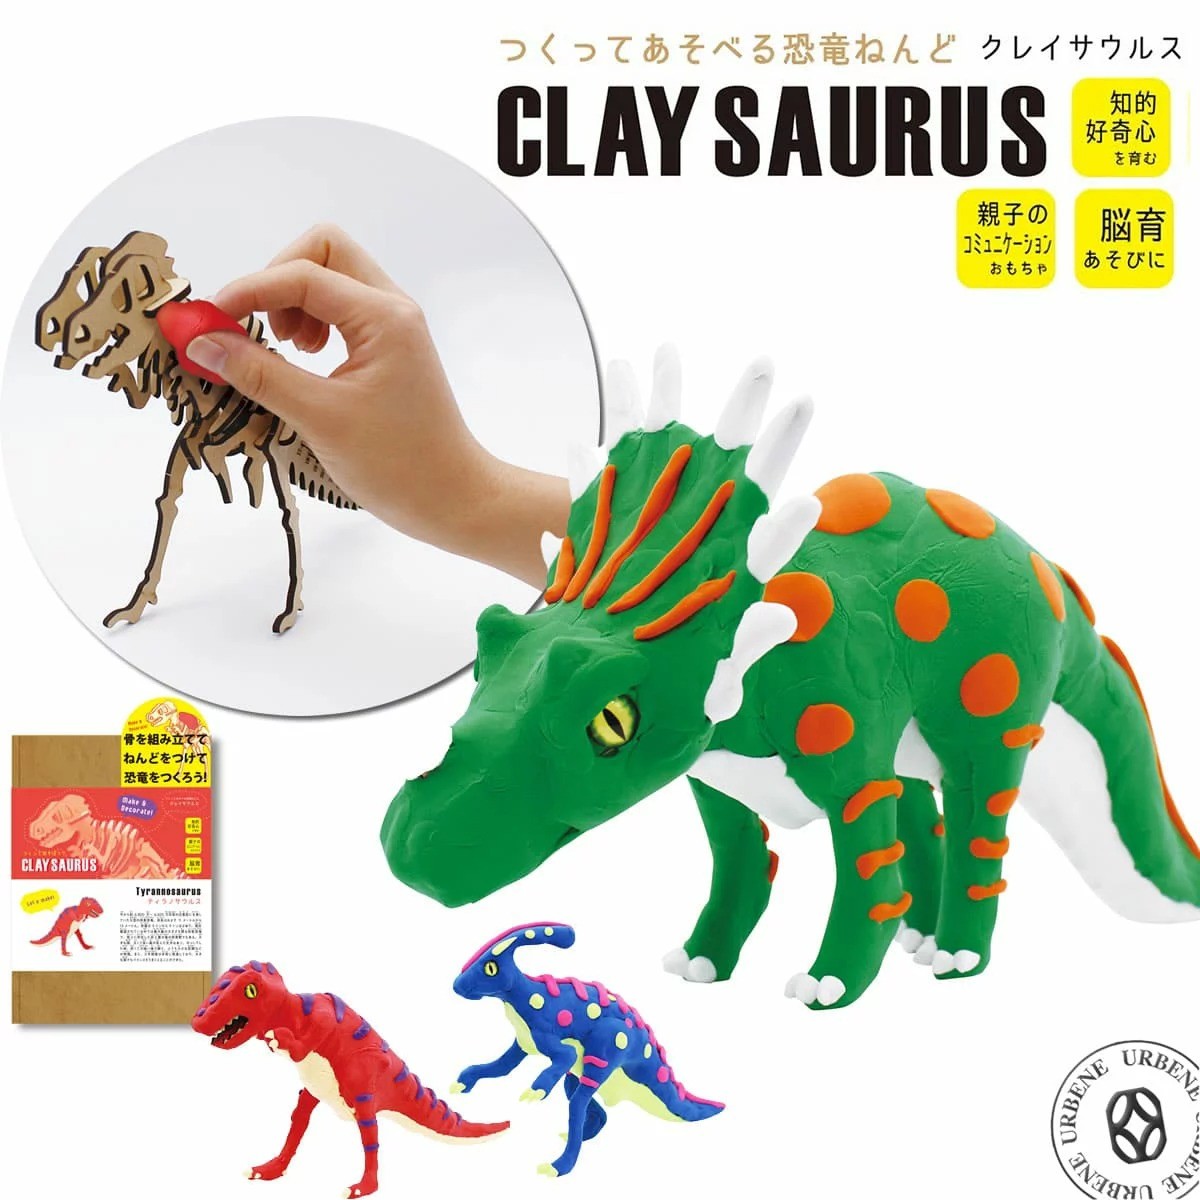 作って遊べる恐竜ねんど クレイサウルス 粘土 ねんどきょうりゅう 工作キット 組み立て ティラノサウルス 親子コミュニケーション 知的好奇心 脳育あそび Cys 1 ジーンズ パンツならurbene 通販 Yahoo ショッピング